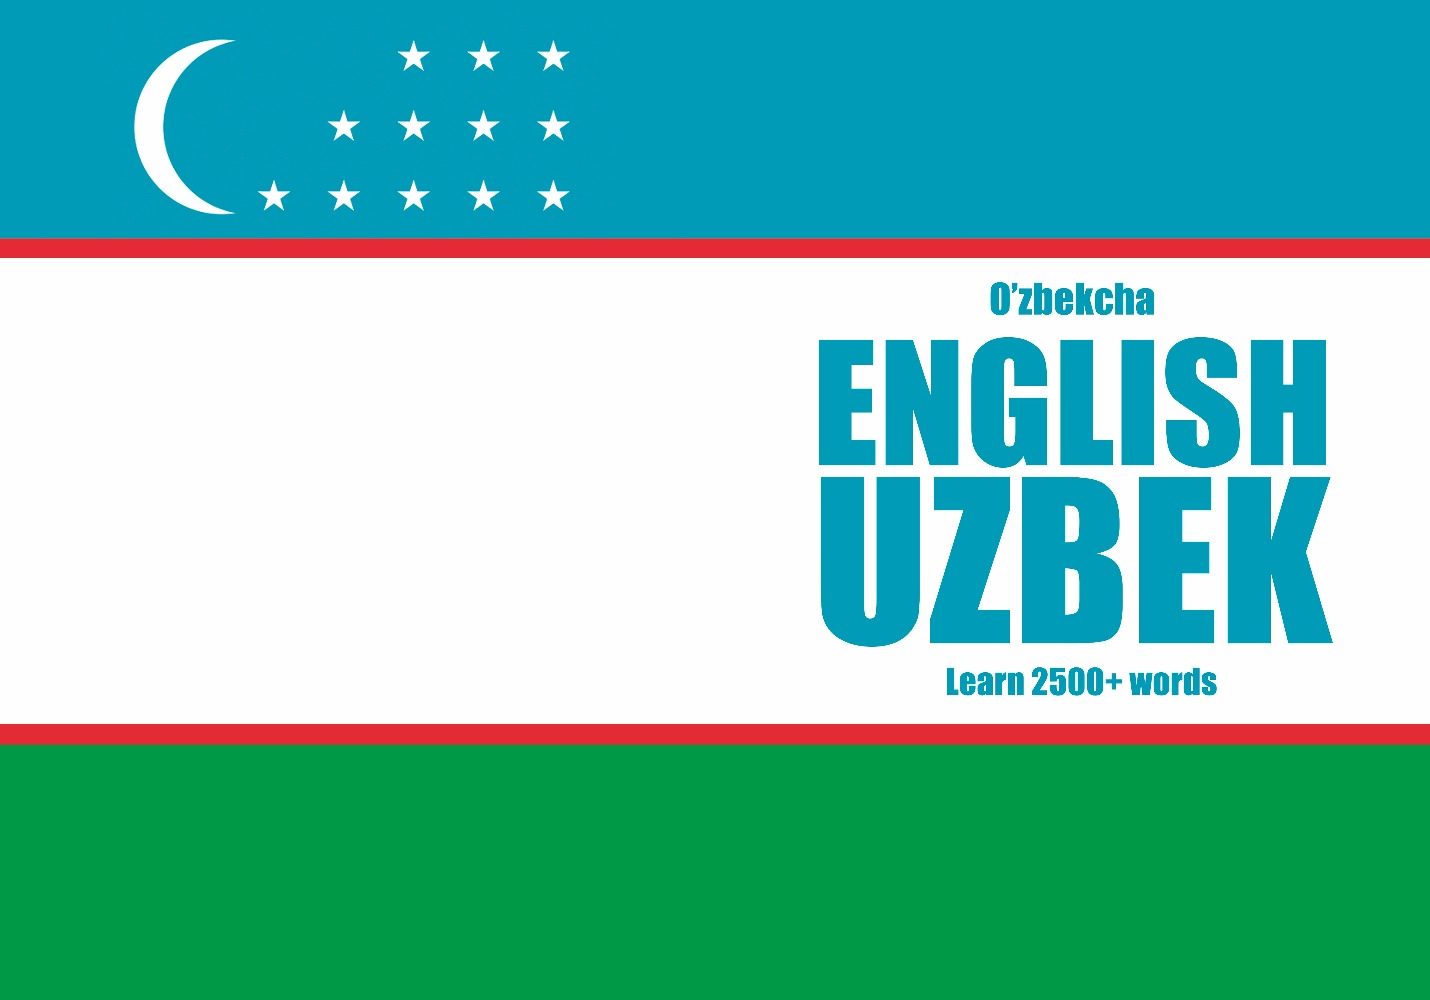 Uzbek language learning notebook cover